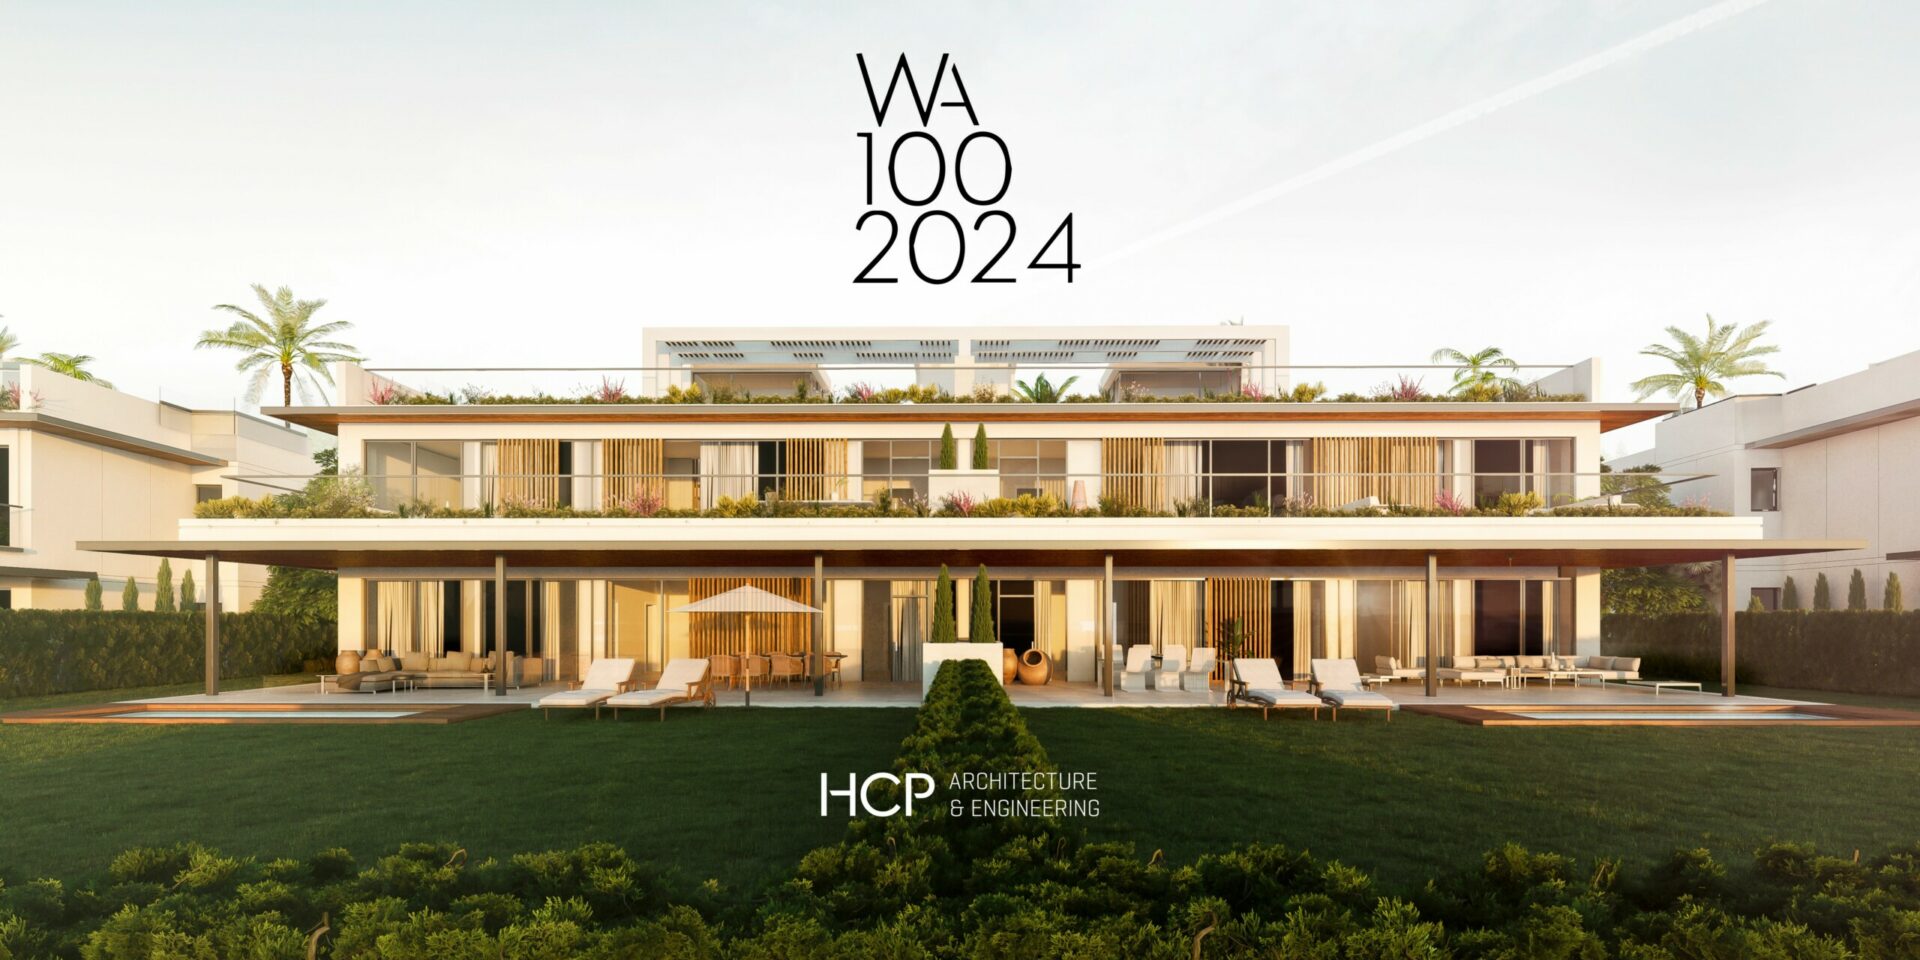 Building Design incluye a HCP en la lista WA100 2024 como uno de los estudios de arquitectura más importantes del año